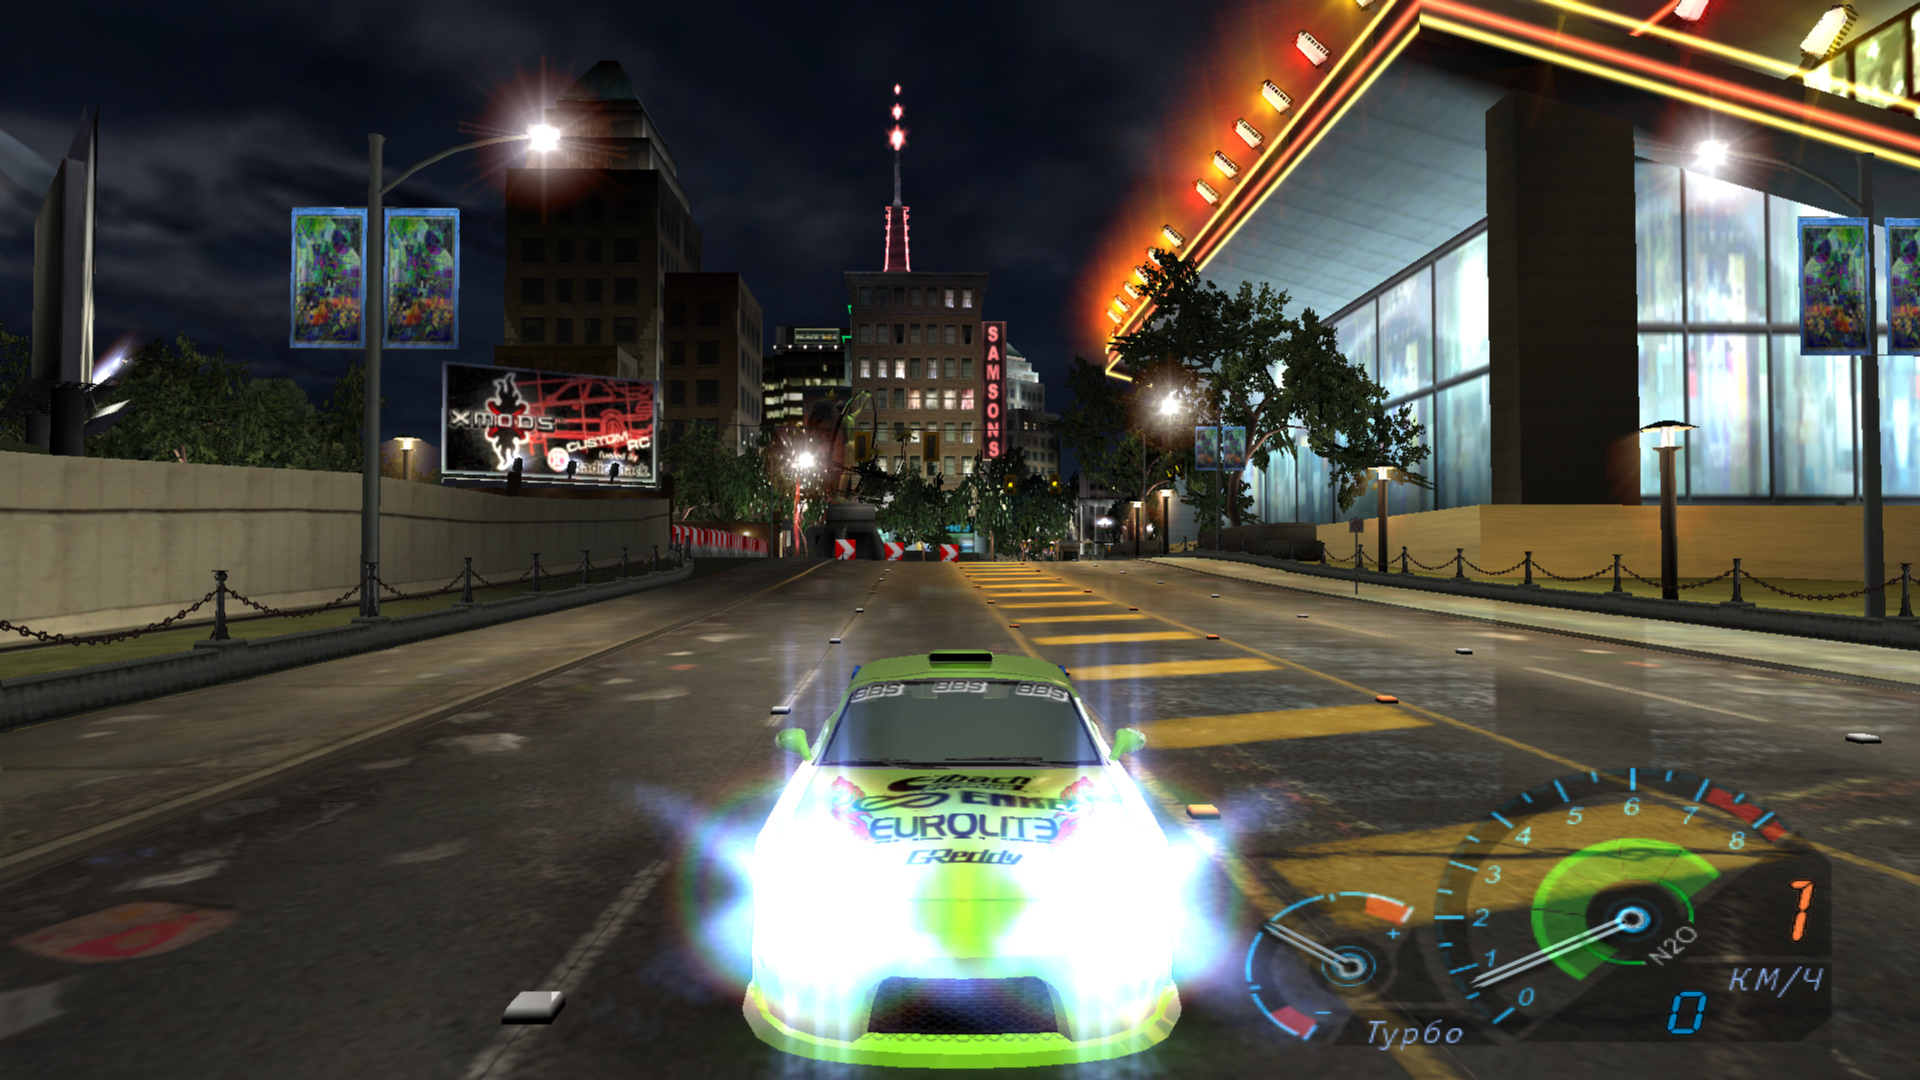 Descarga gratuita de fondo de pantalla para móvil de Automóvil, Carreras, Need For Speed, Juegos.